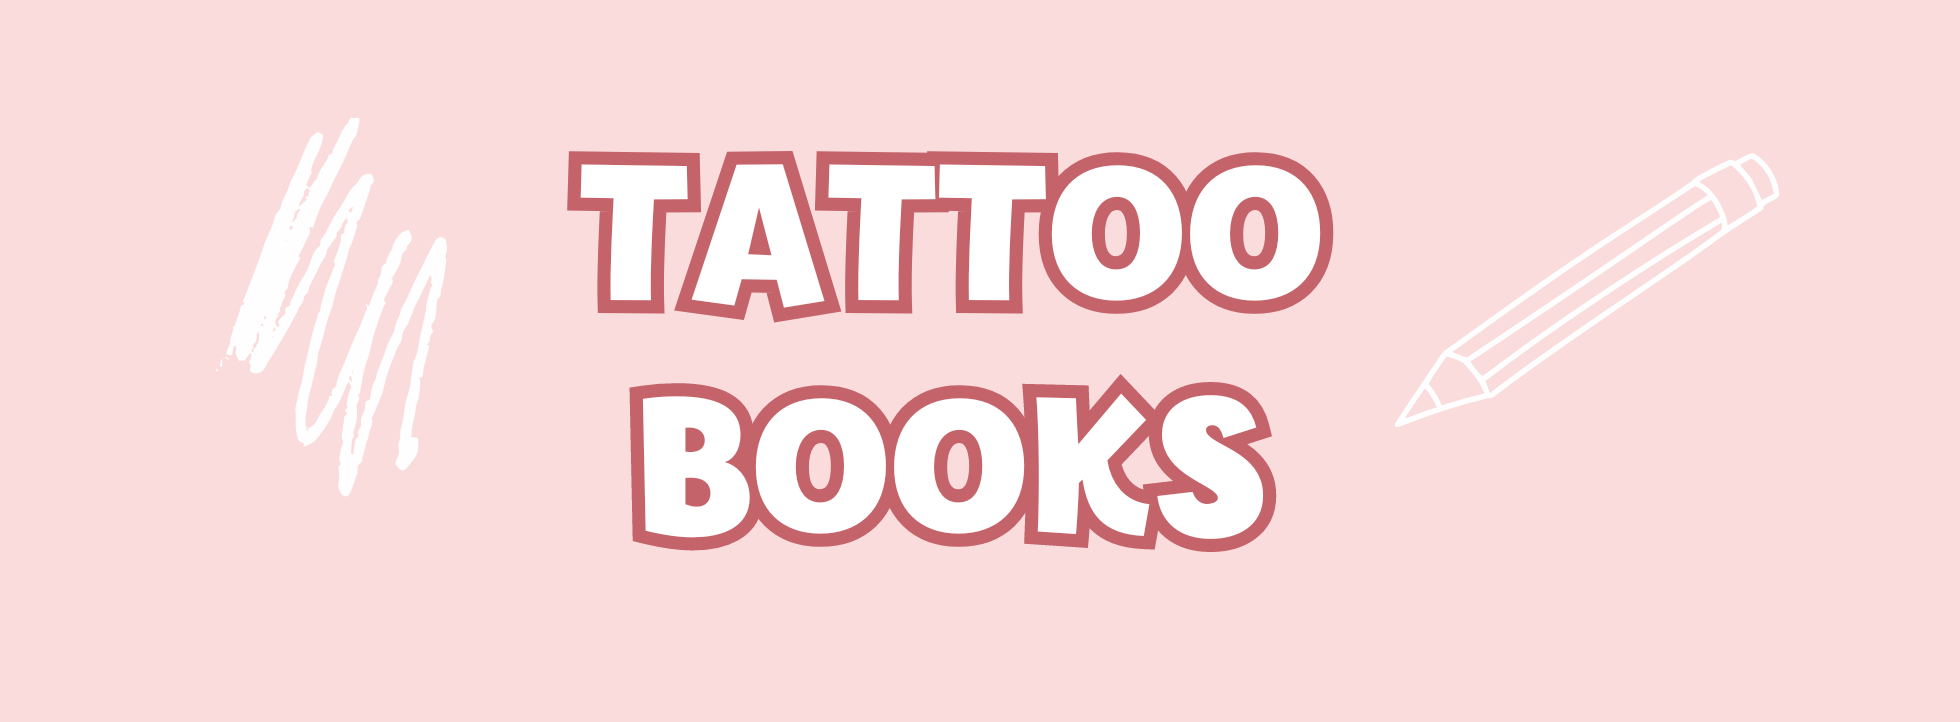 Tattoo books